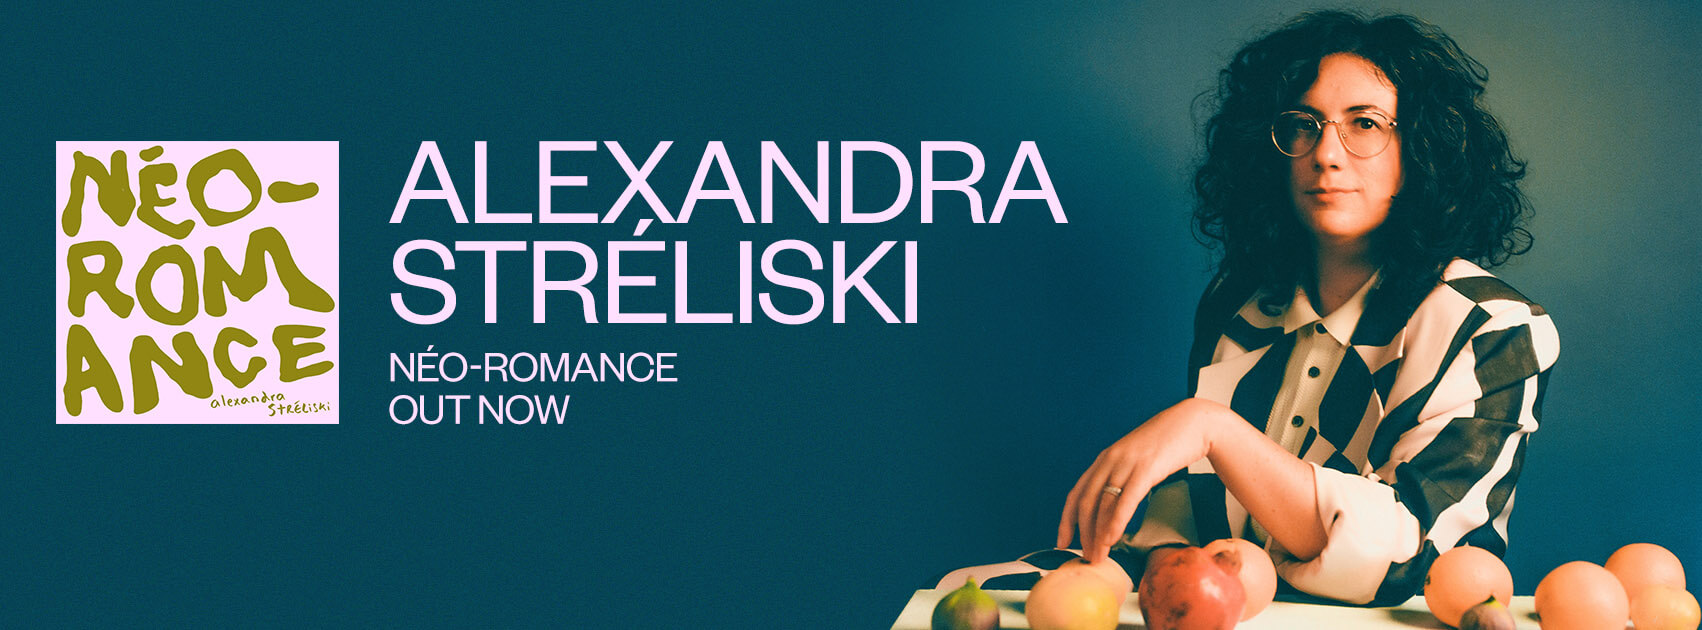 AlexandraStreliski-NeoRomance-SCRWebsite-EN